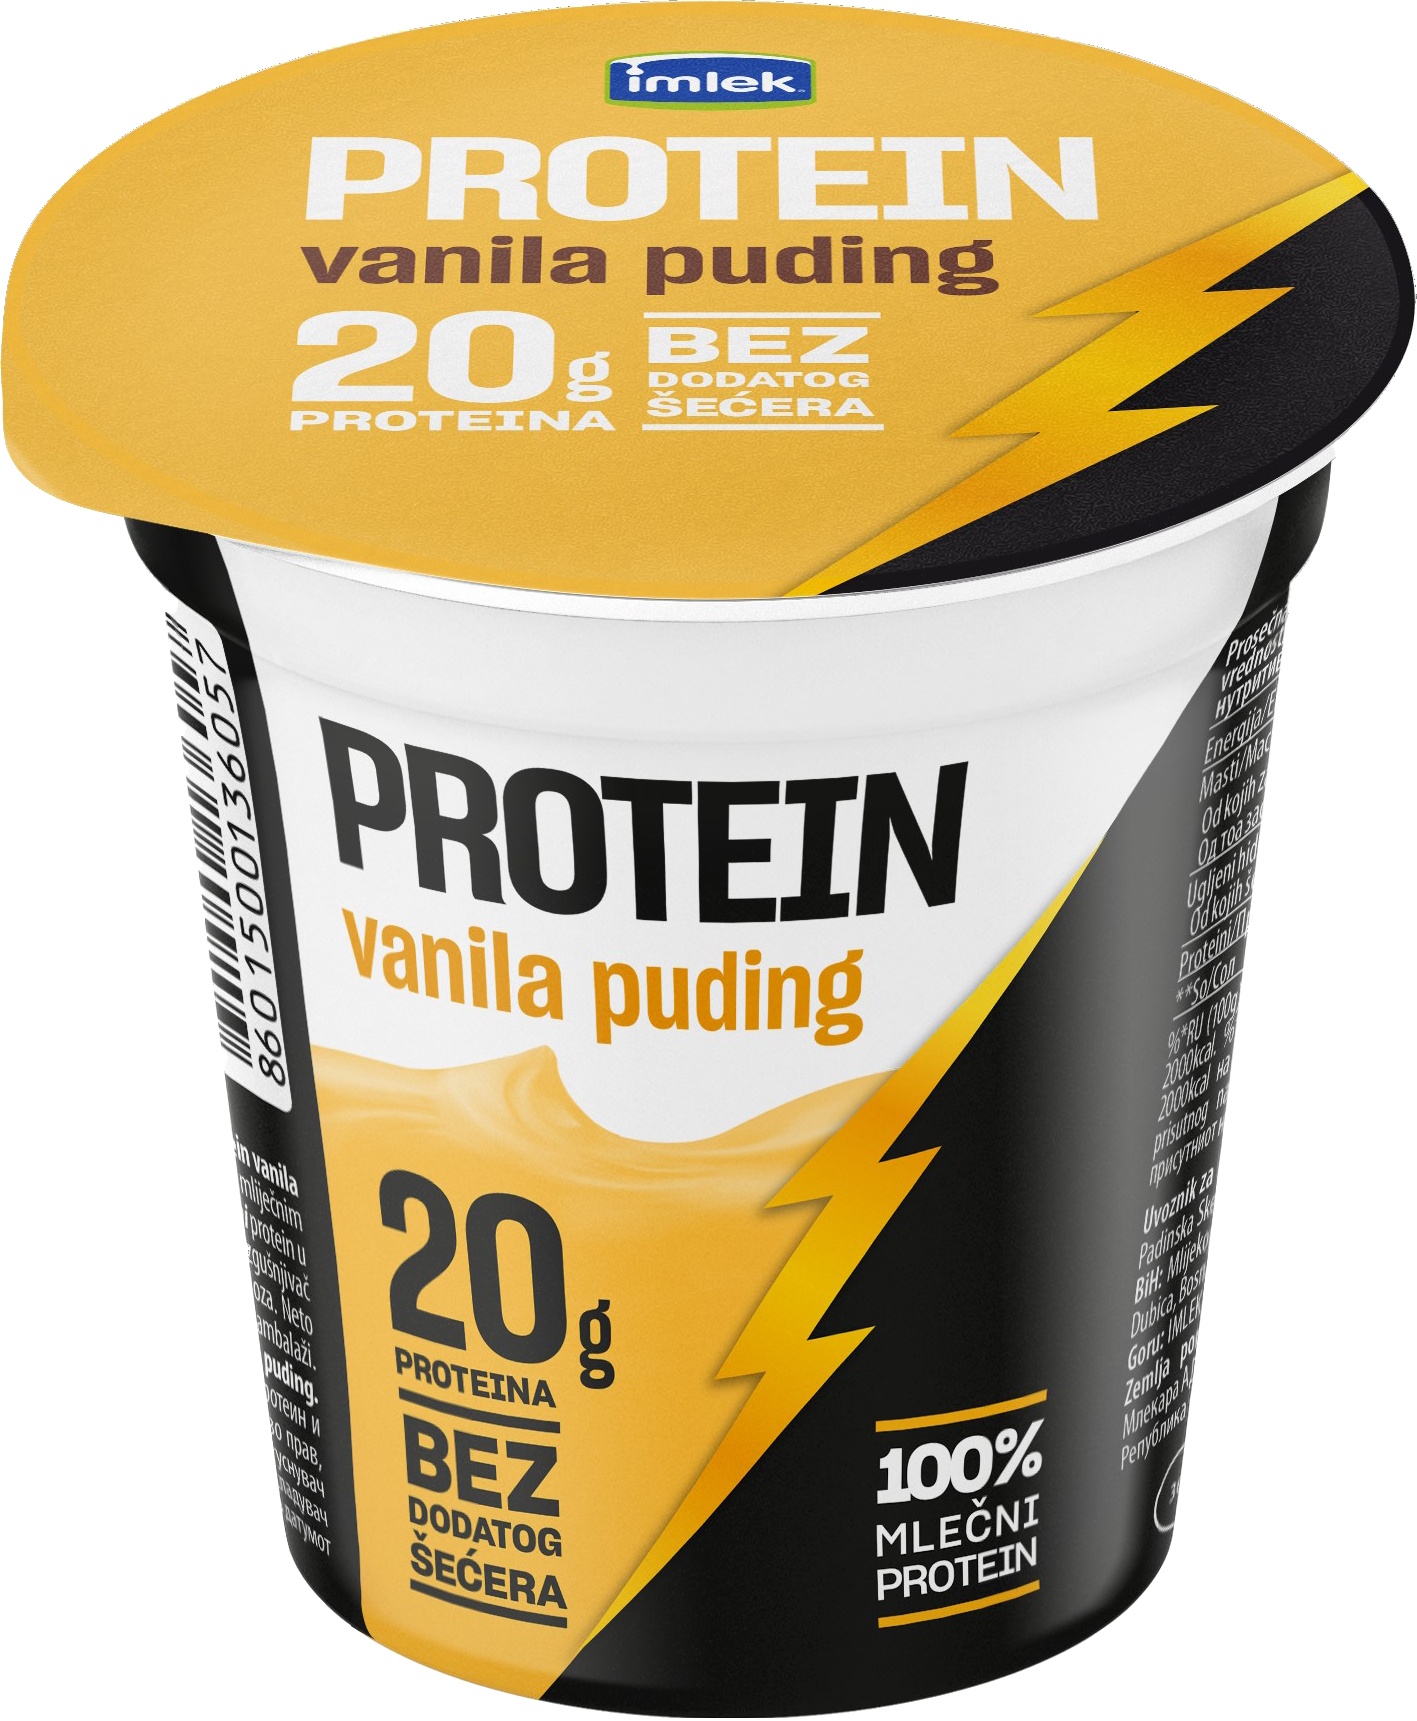 Slika za Proteinski napitak vanila puding Imlek 200g